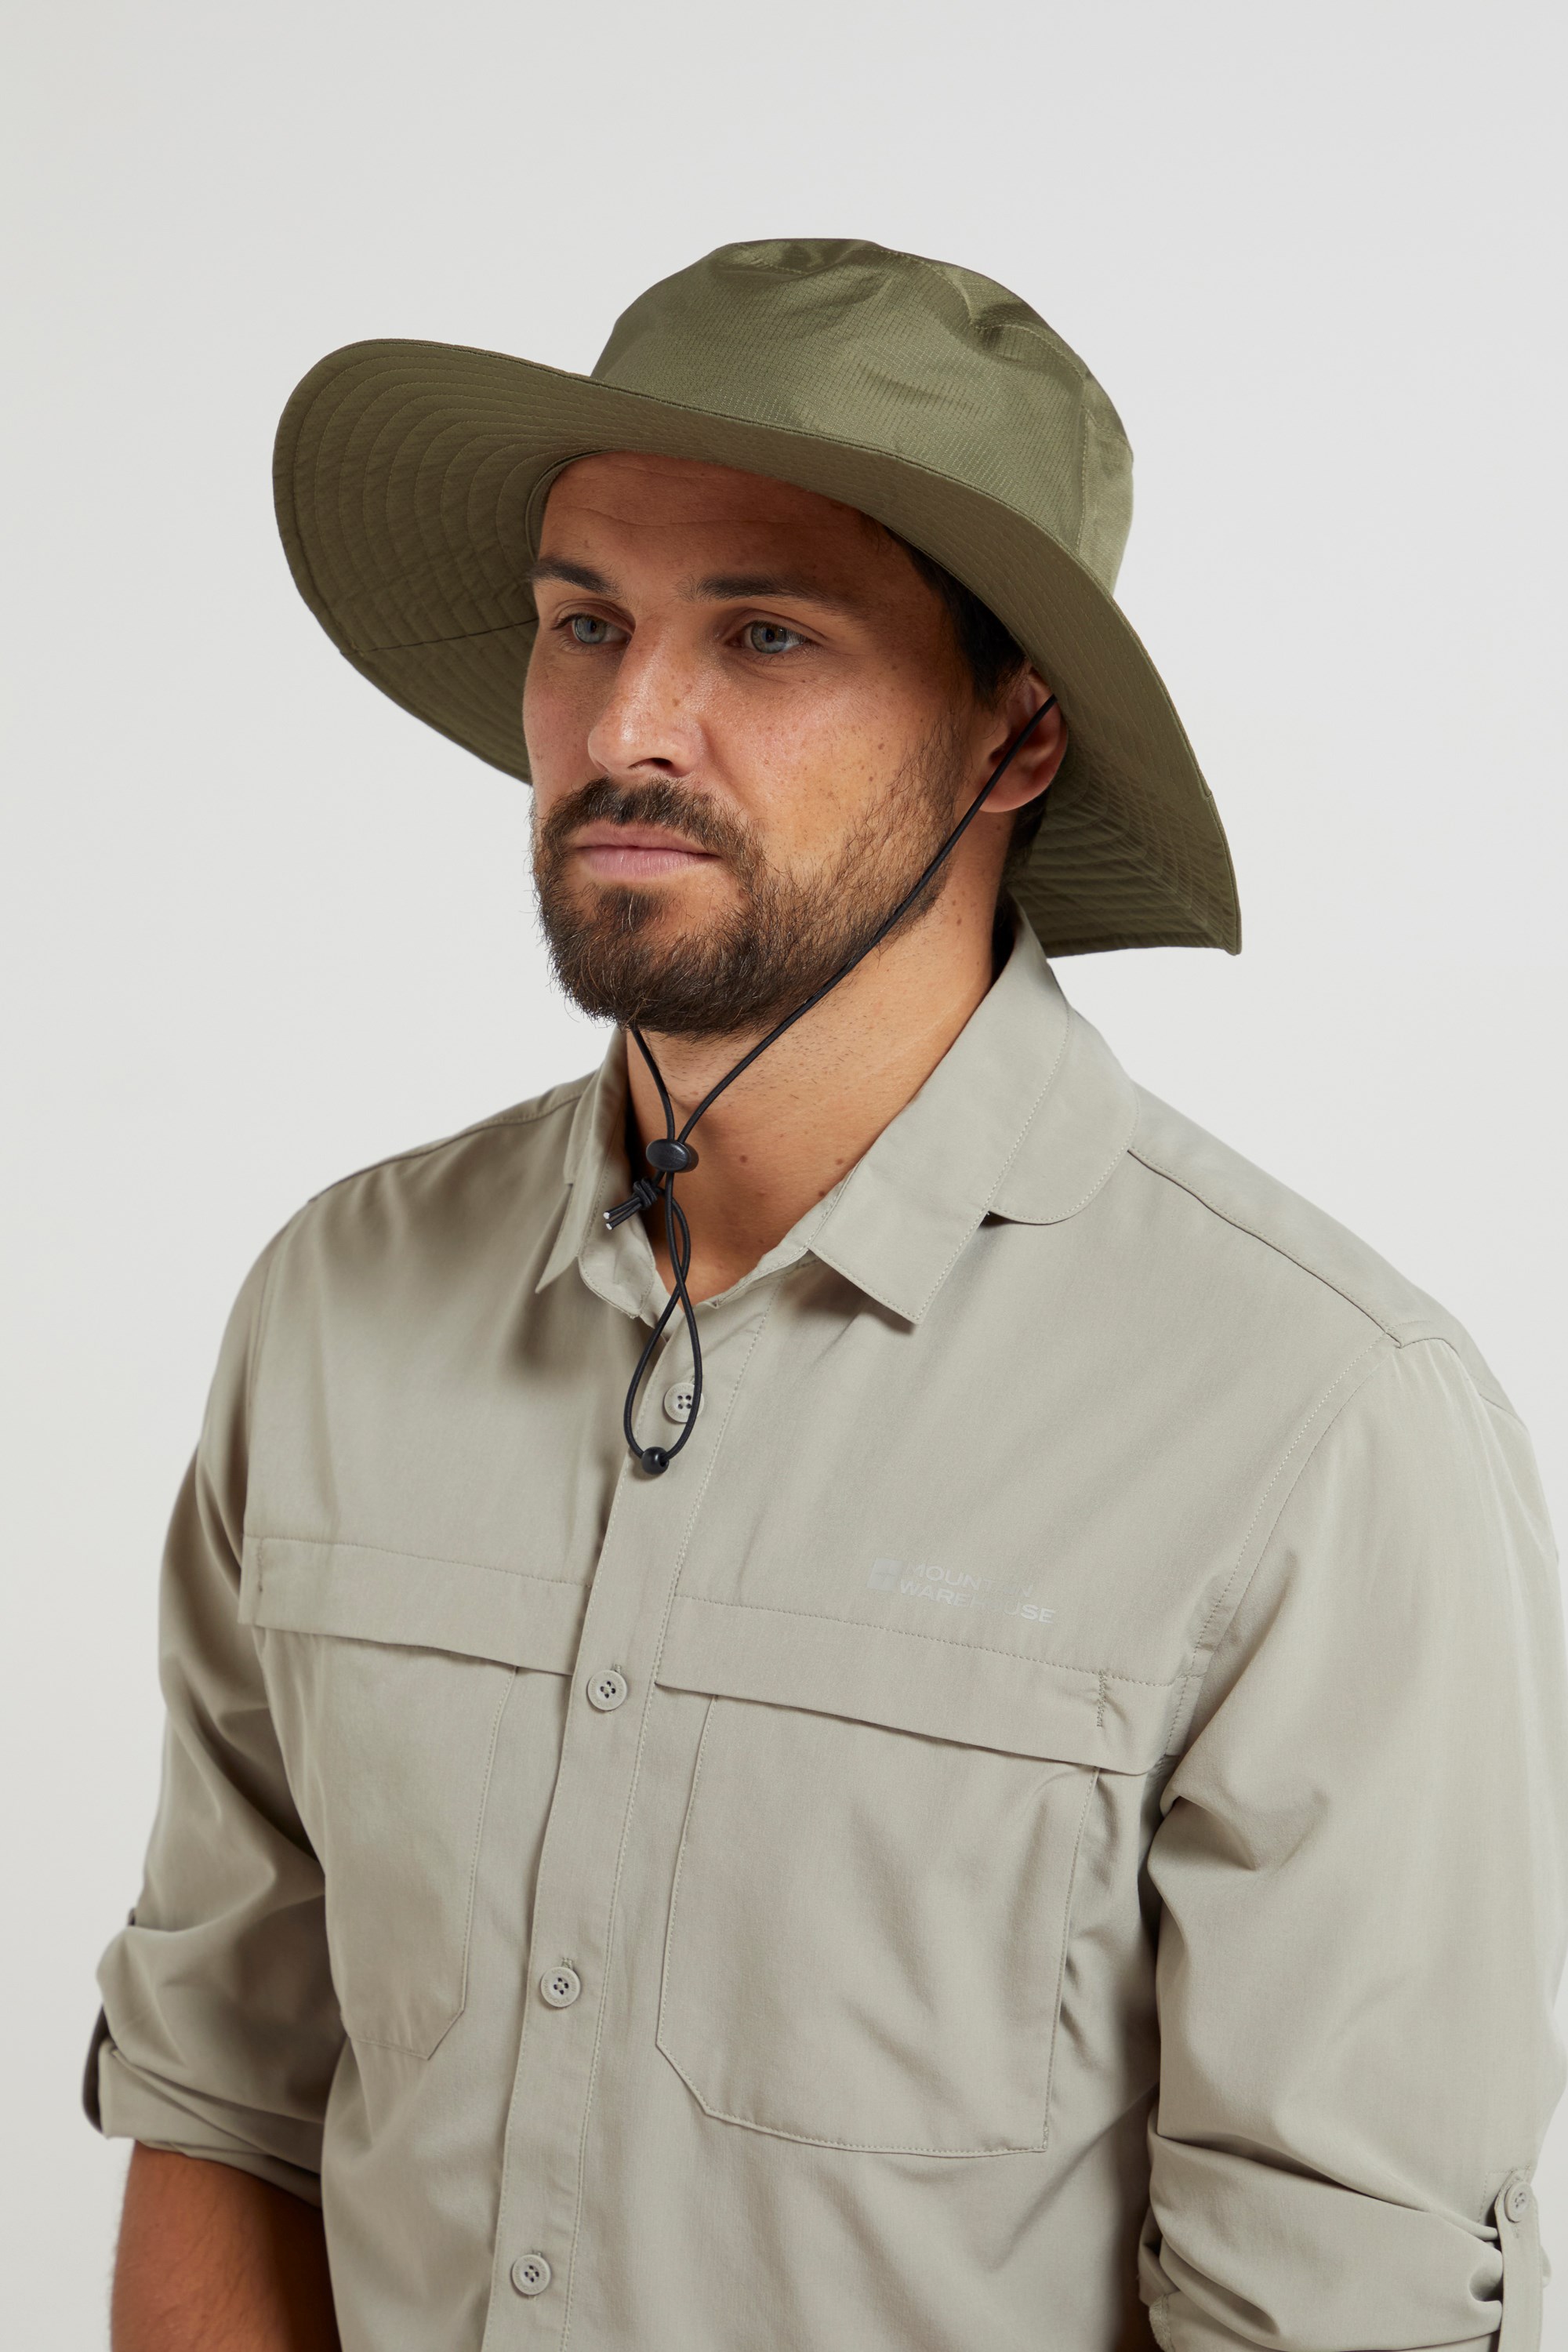 Australian Wide Brimmed Waterproof Hat - Green